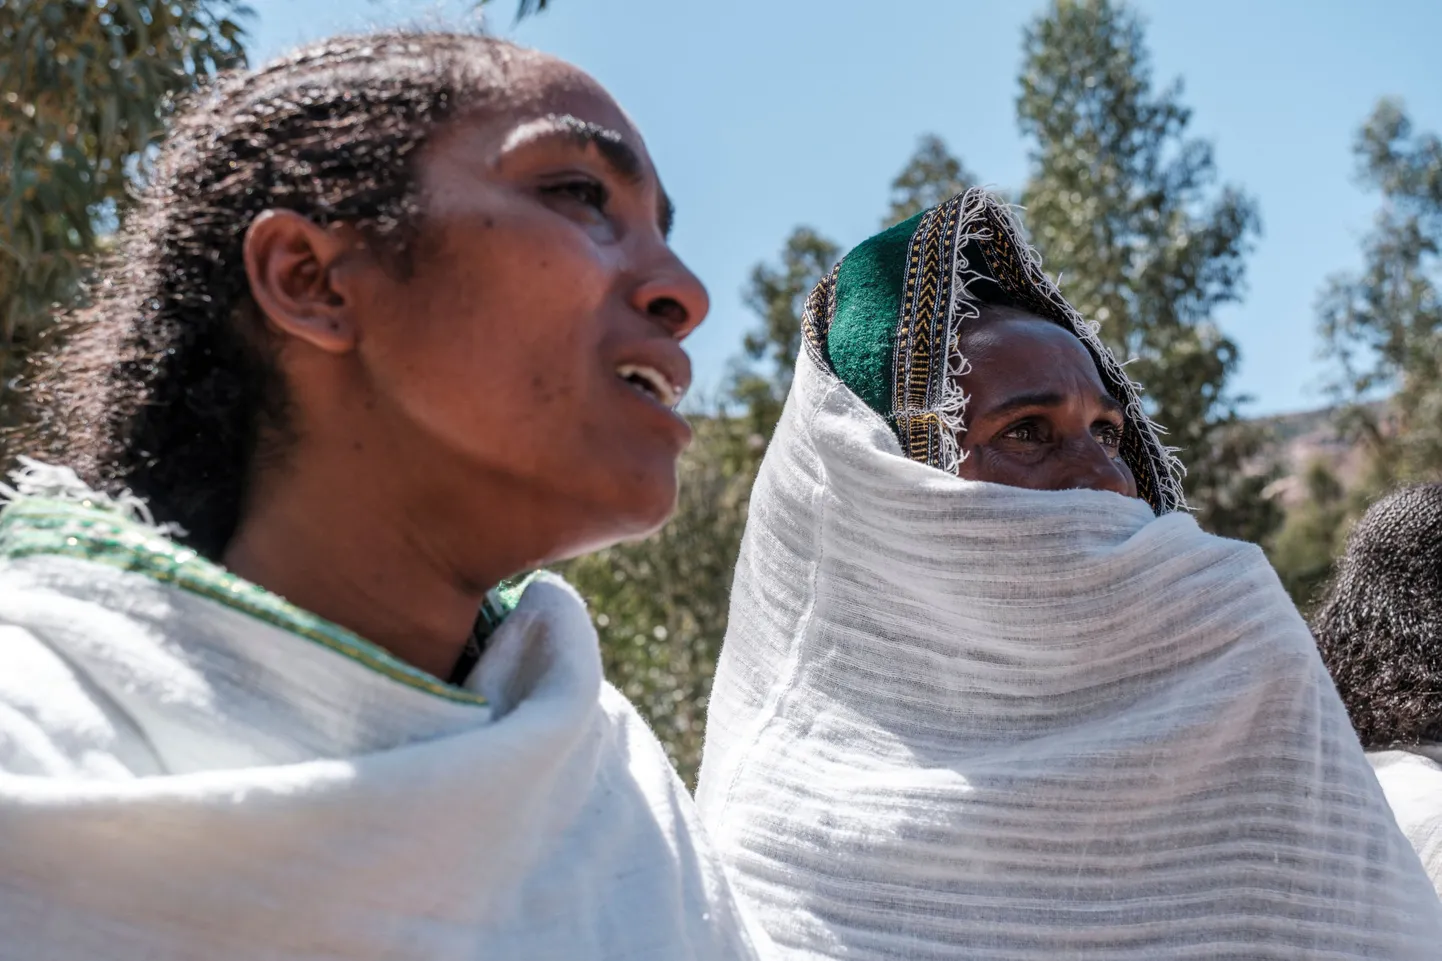 Inimesed Etioopia valitsusvägede massimõrva ohvreid mälestamas.